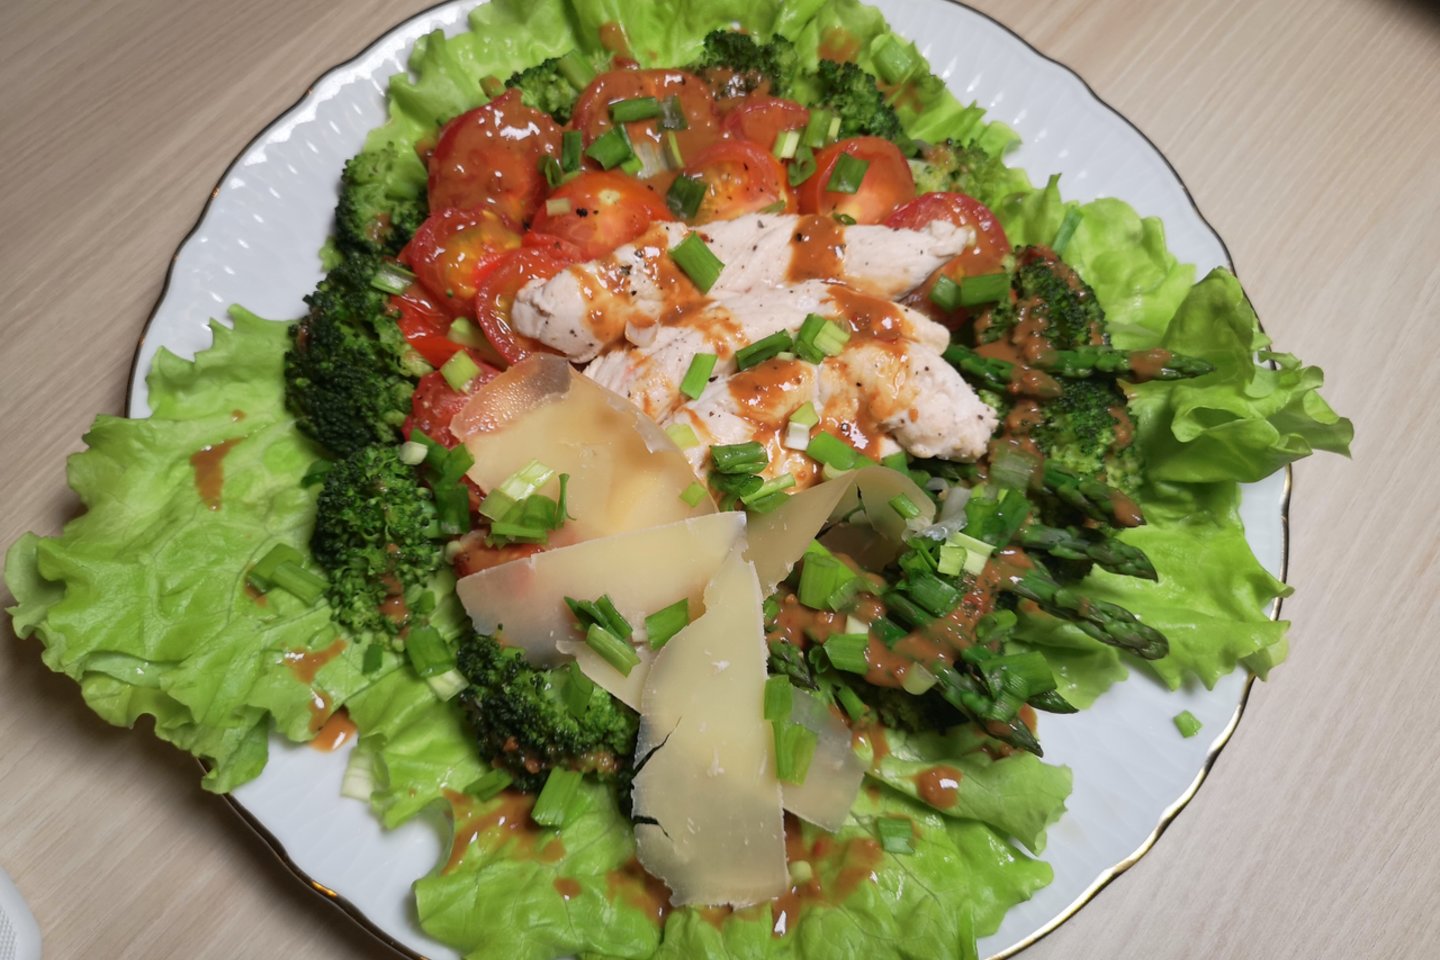  Šiltos brokolių salotos su vištiena.<br> Laidos „Virtuvės revizija“ stop kadras.